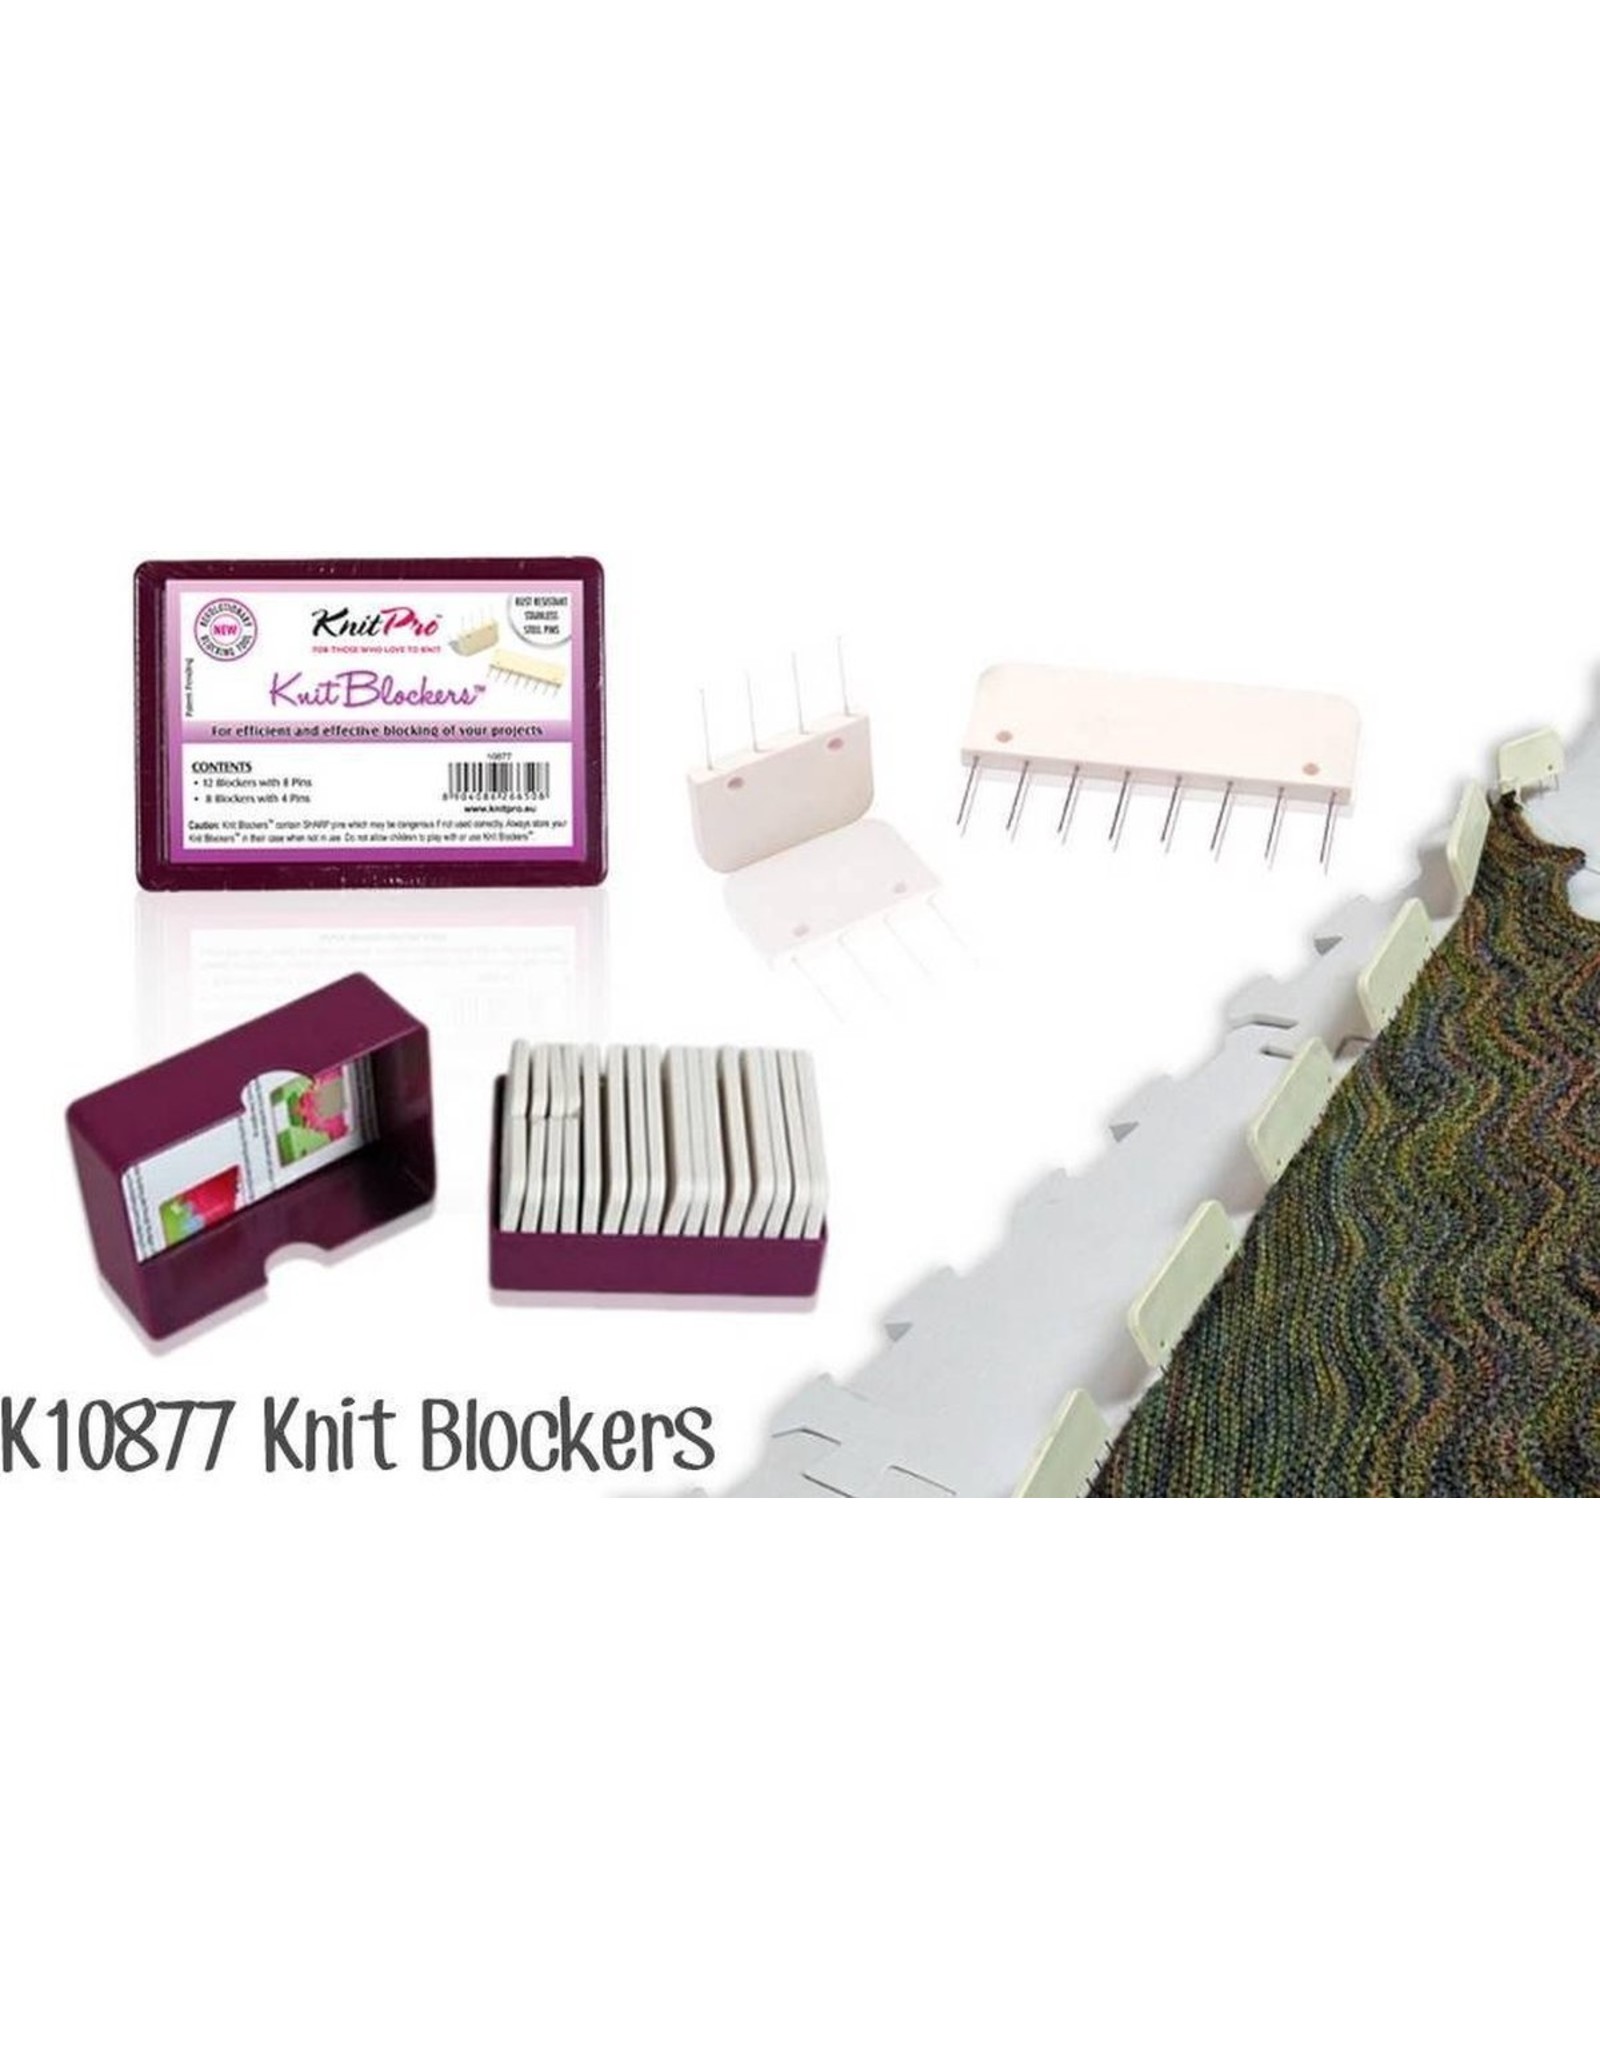 KnitPro KnitPro Knit blockers